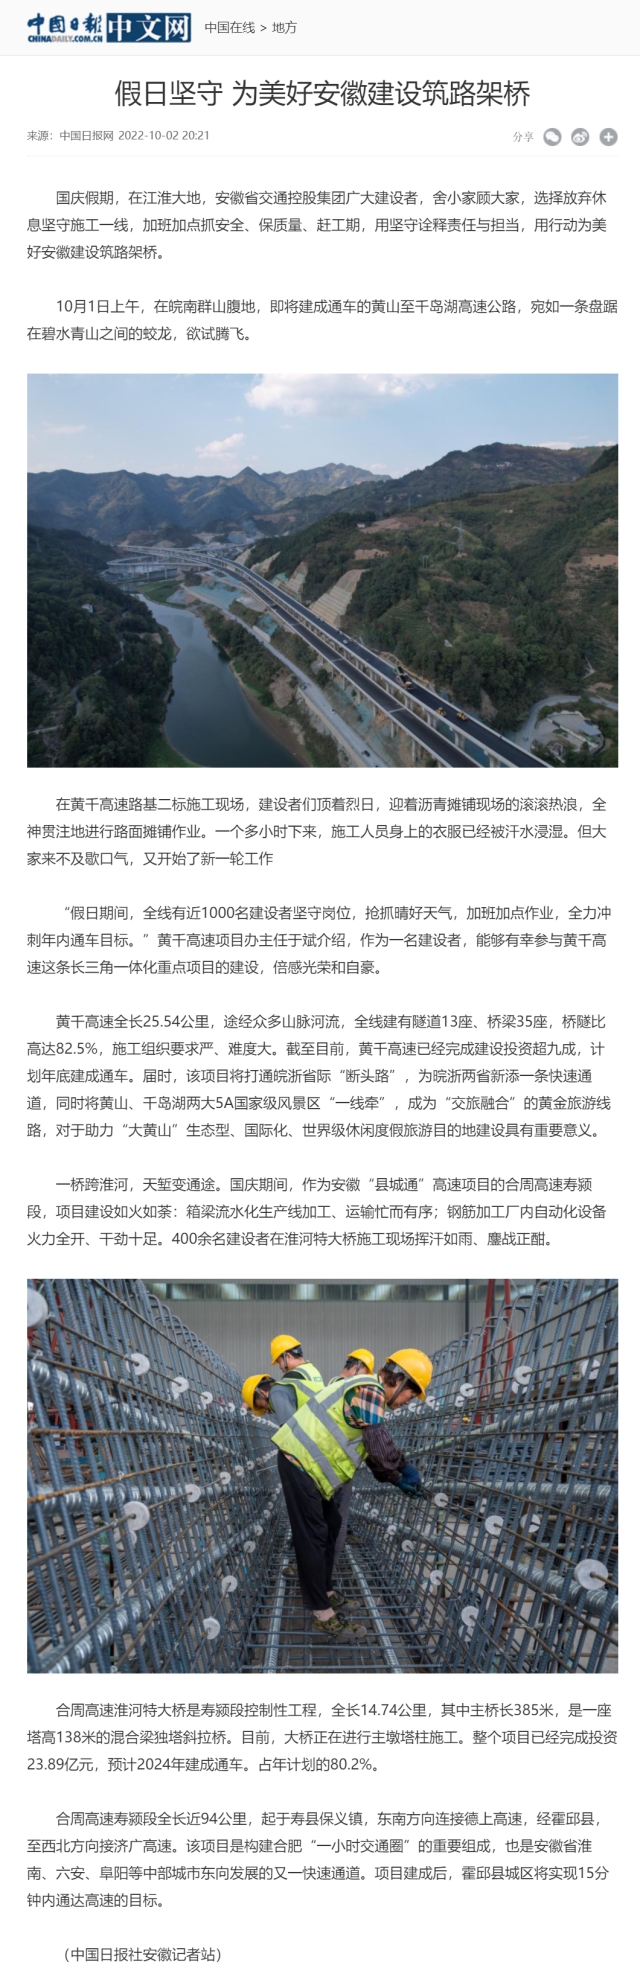 假日坚守 为美好安徽建设筑路架桥 - 中国日报网0.png